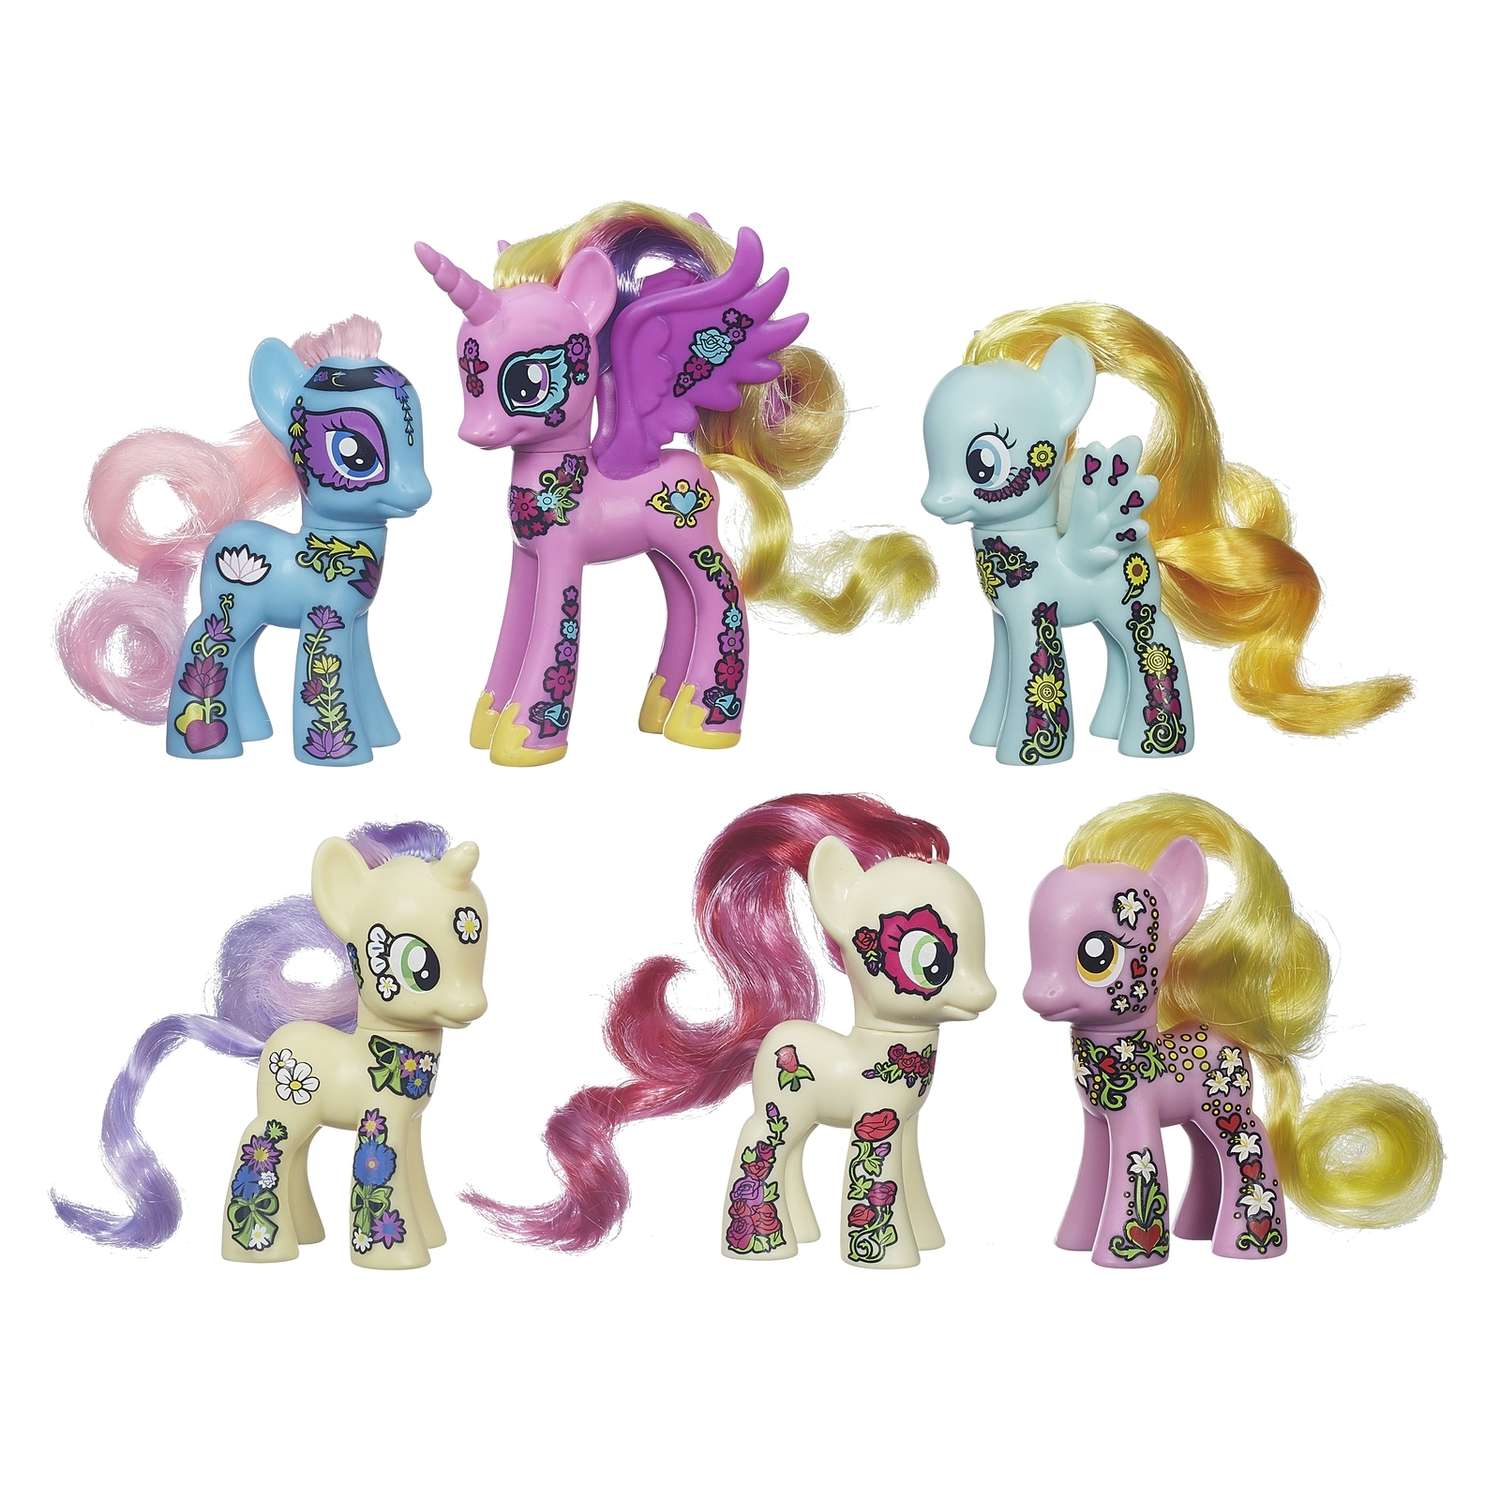 Новые игрушки литл пони. Набор 6 пони Ponymania. My little Pony набор Ponymania. Ponymania Friendship Blossom. МЛП набор блоссом.